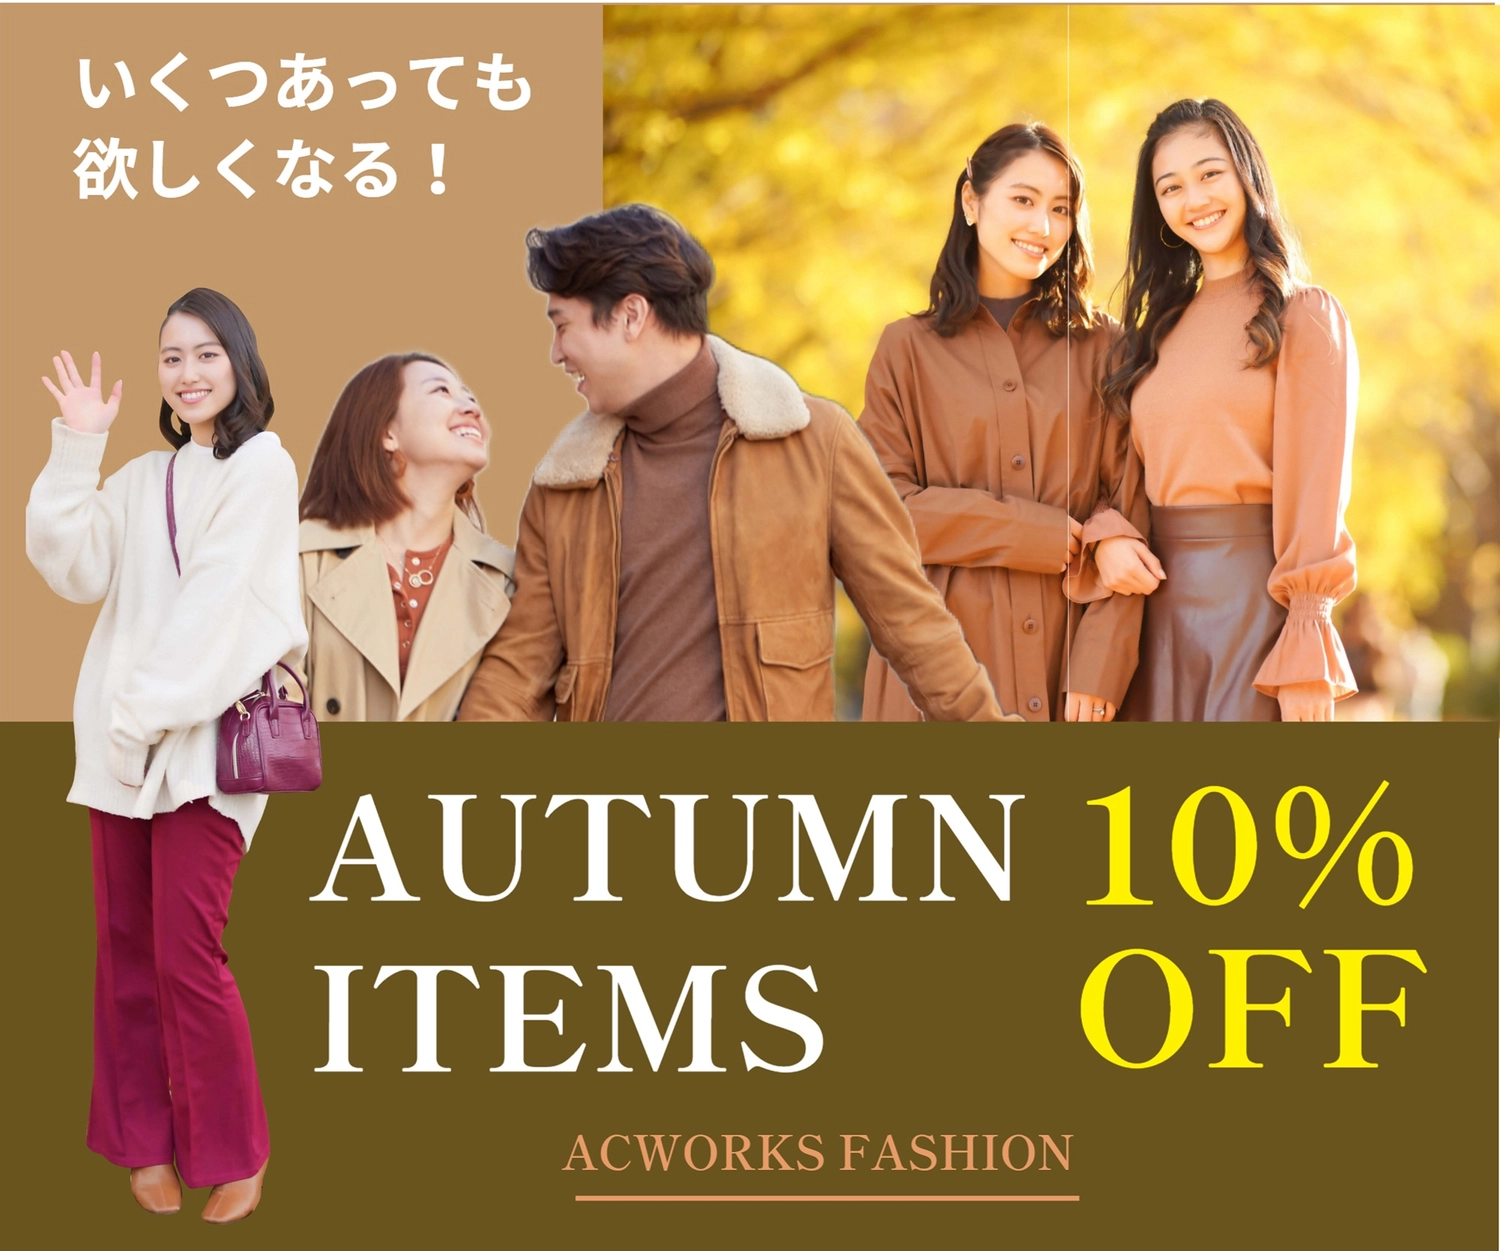 男女写真の10%OFFバナー, autumn clothes, create, edit, Banner template